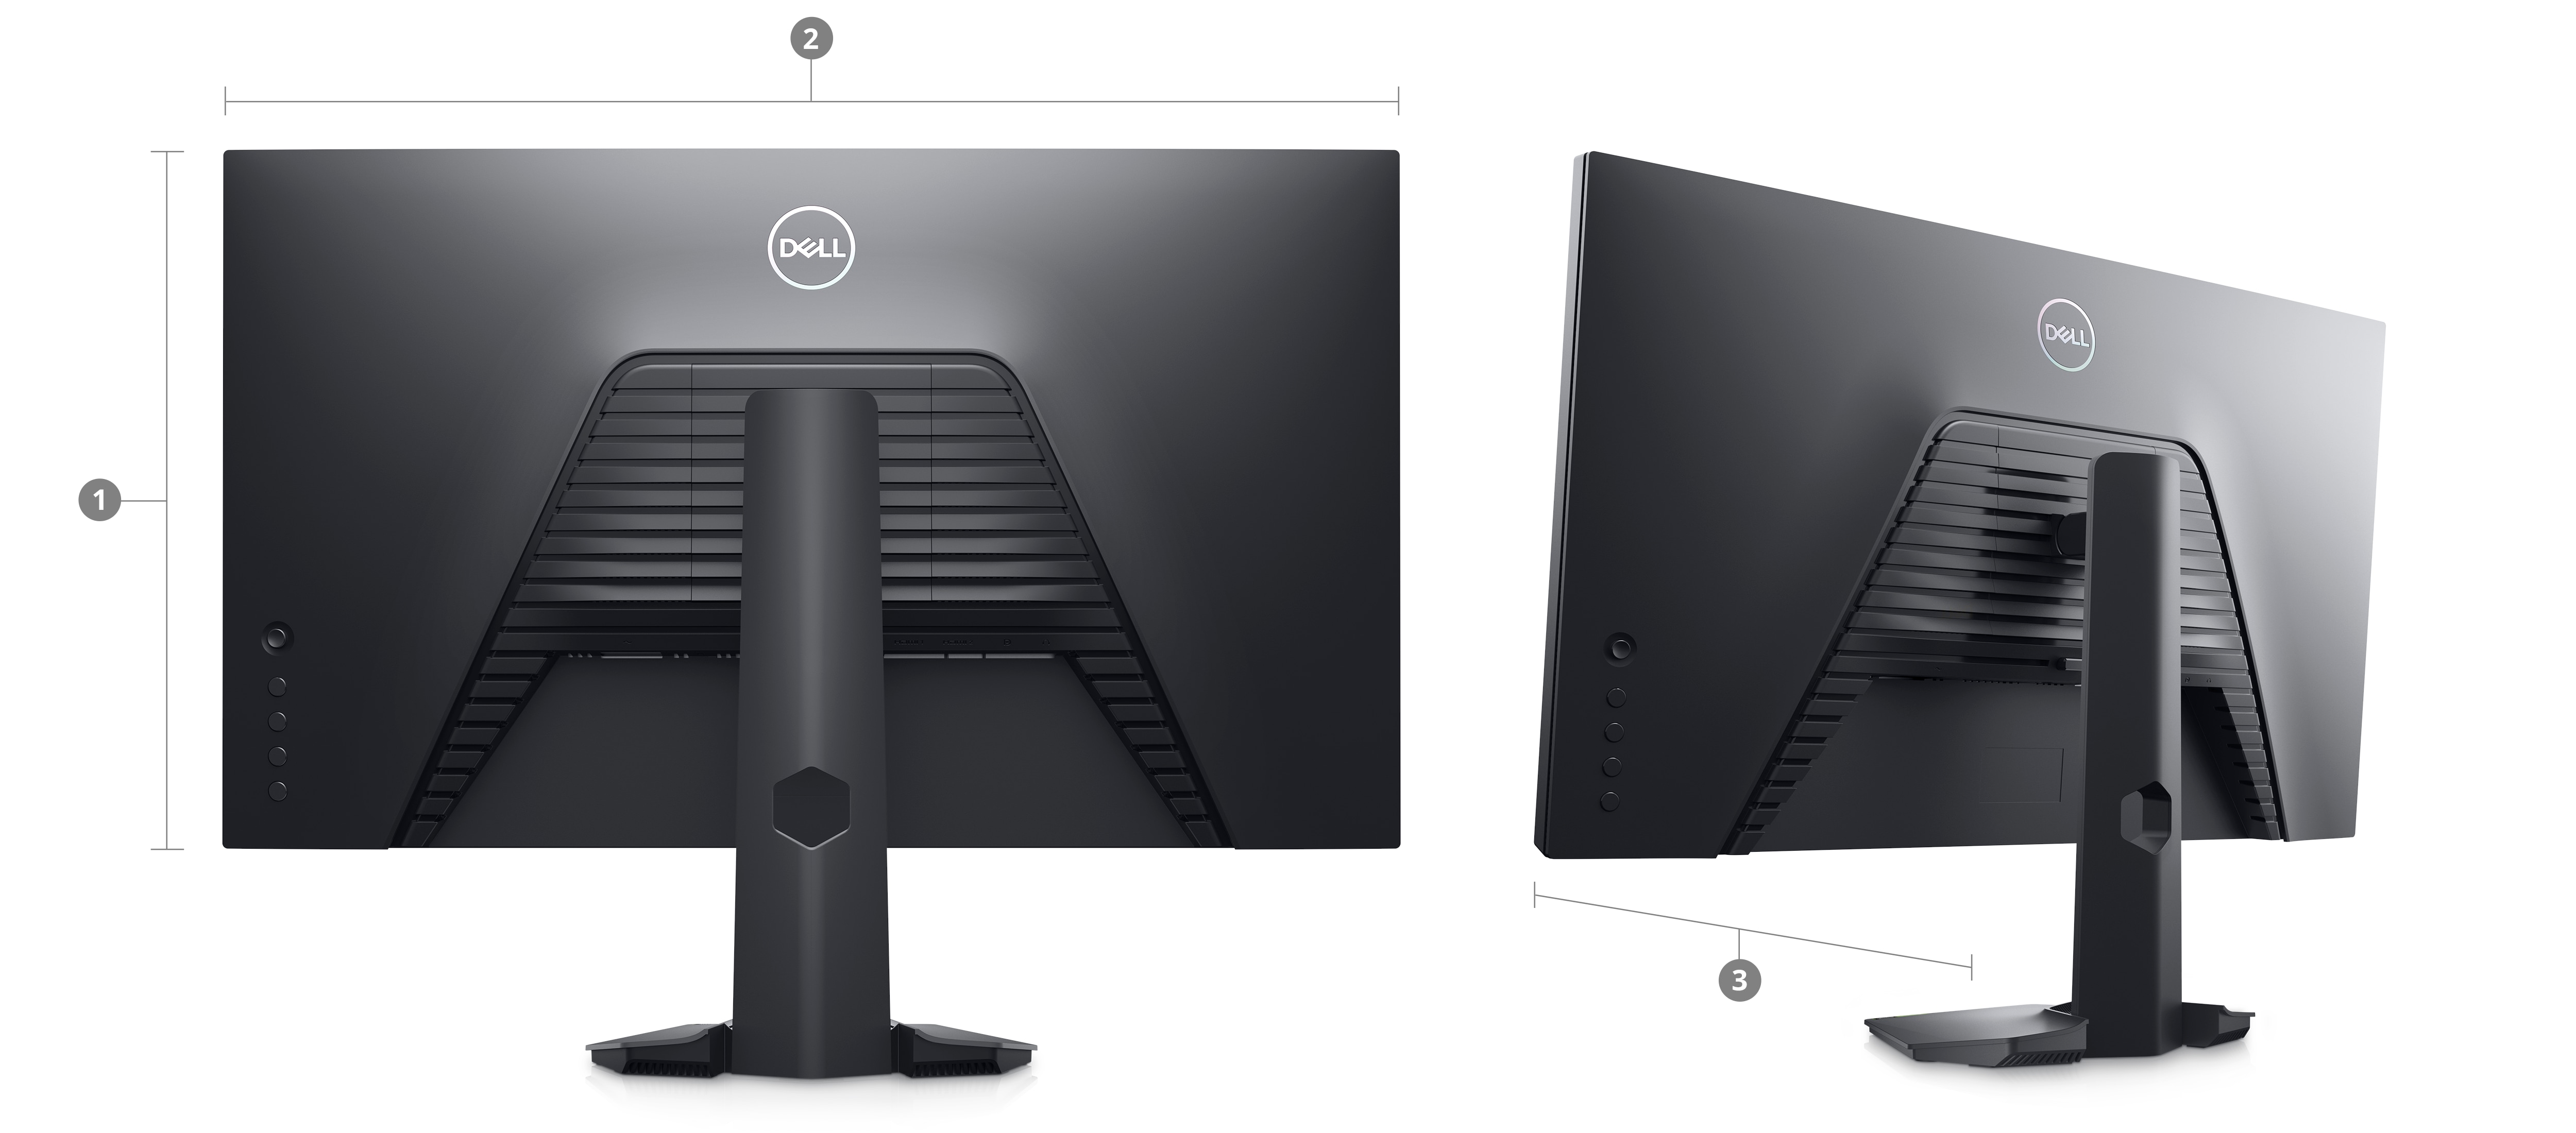 Image de deux écrans de gaming Dell S2722HS avec des chiffres à l’arrière compris entre 1 et 3, indiquant les dimensions et le poids.